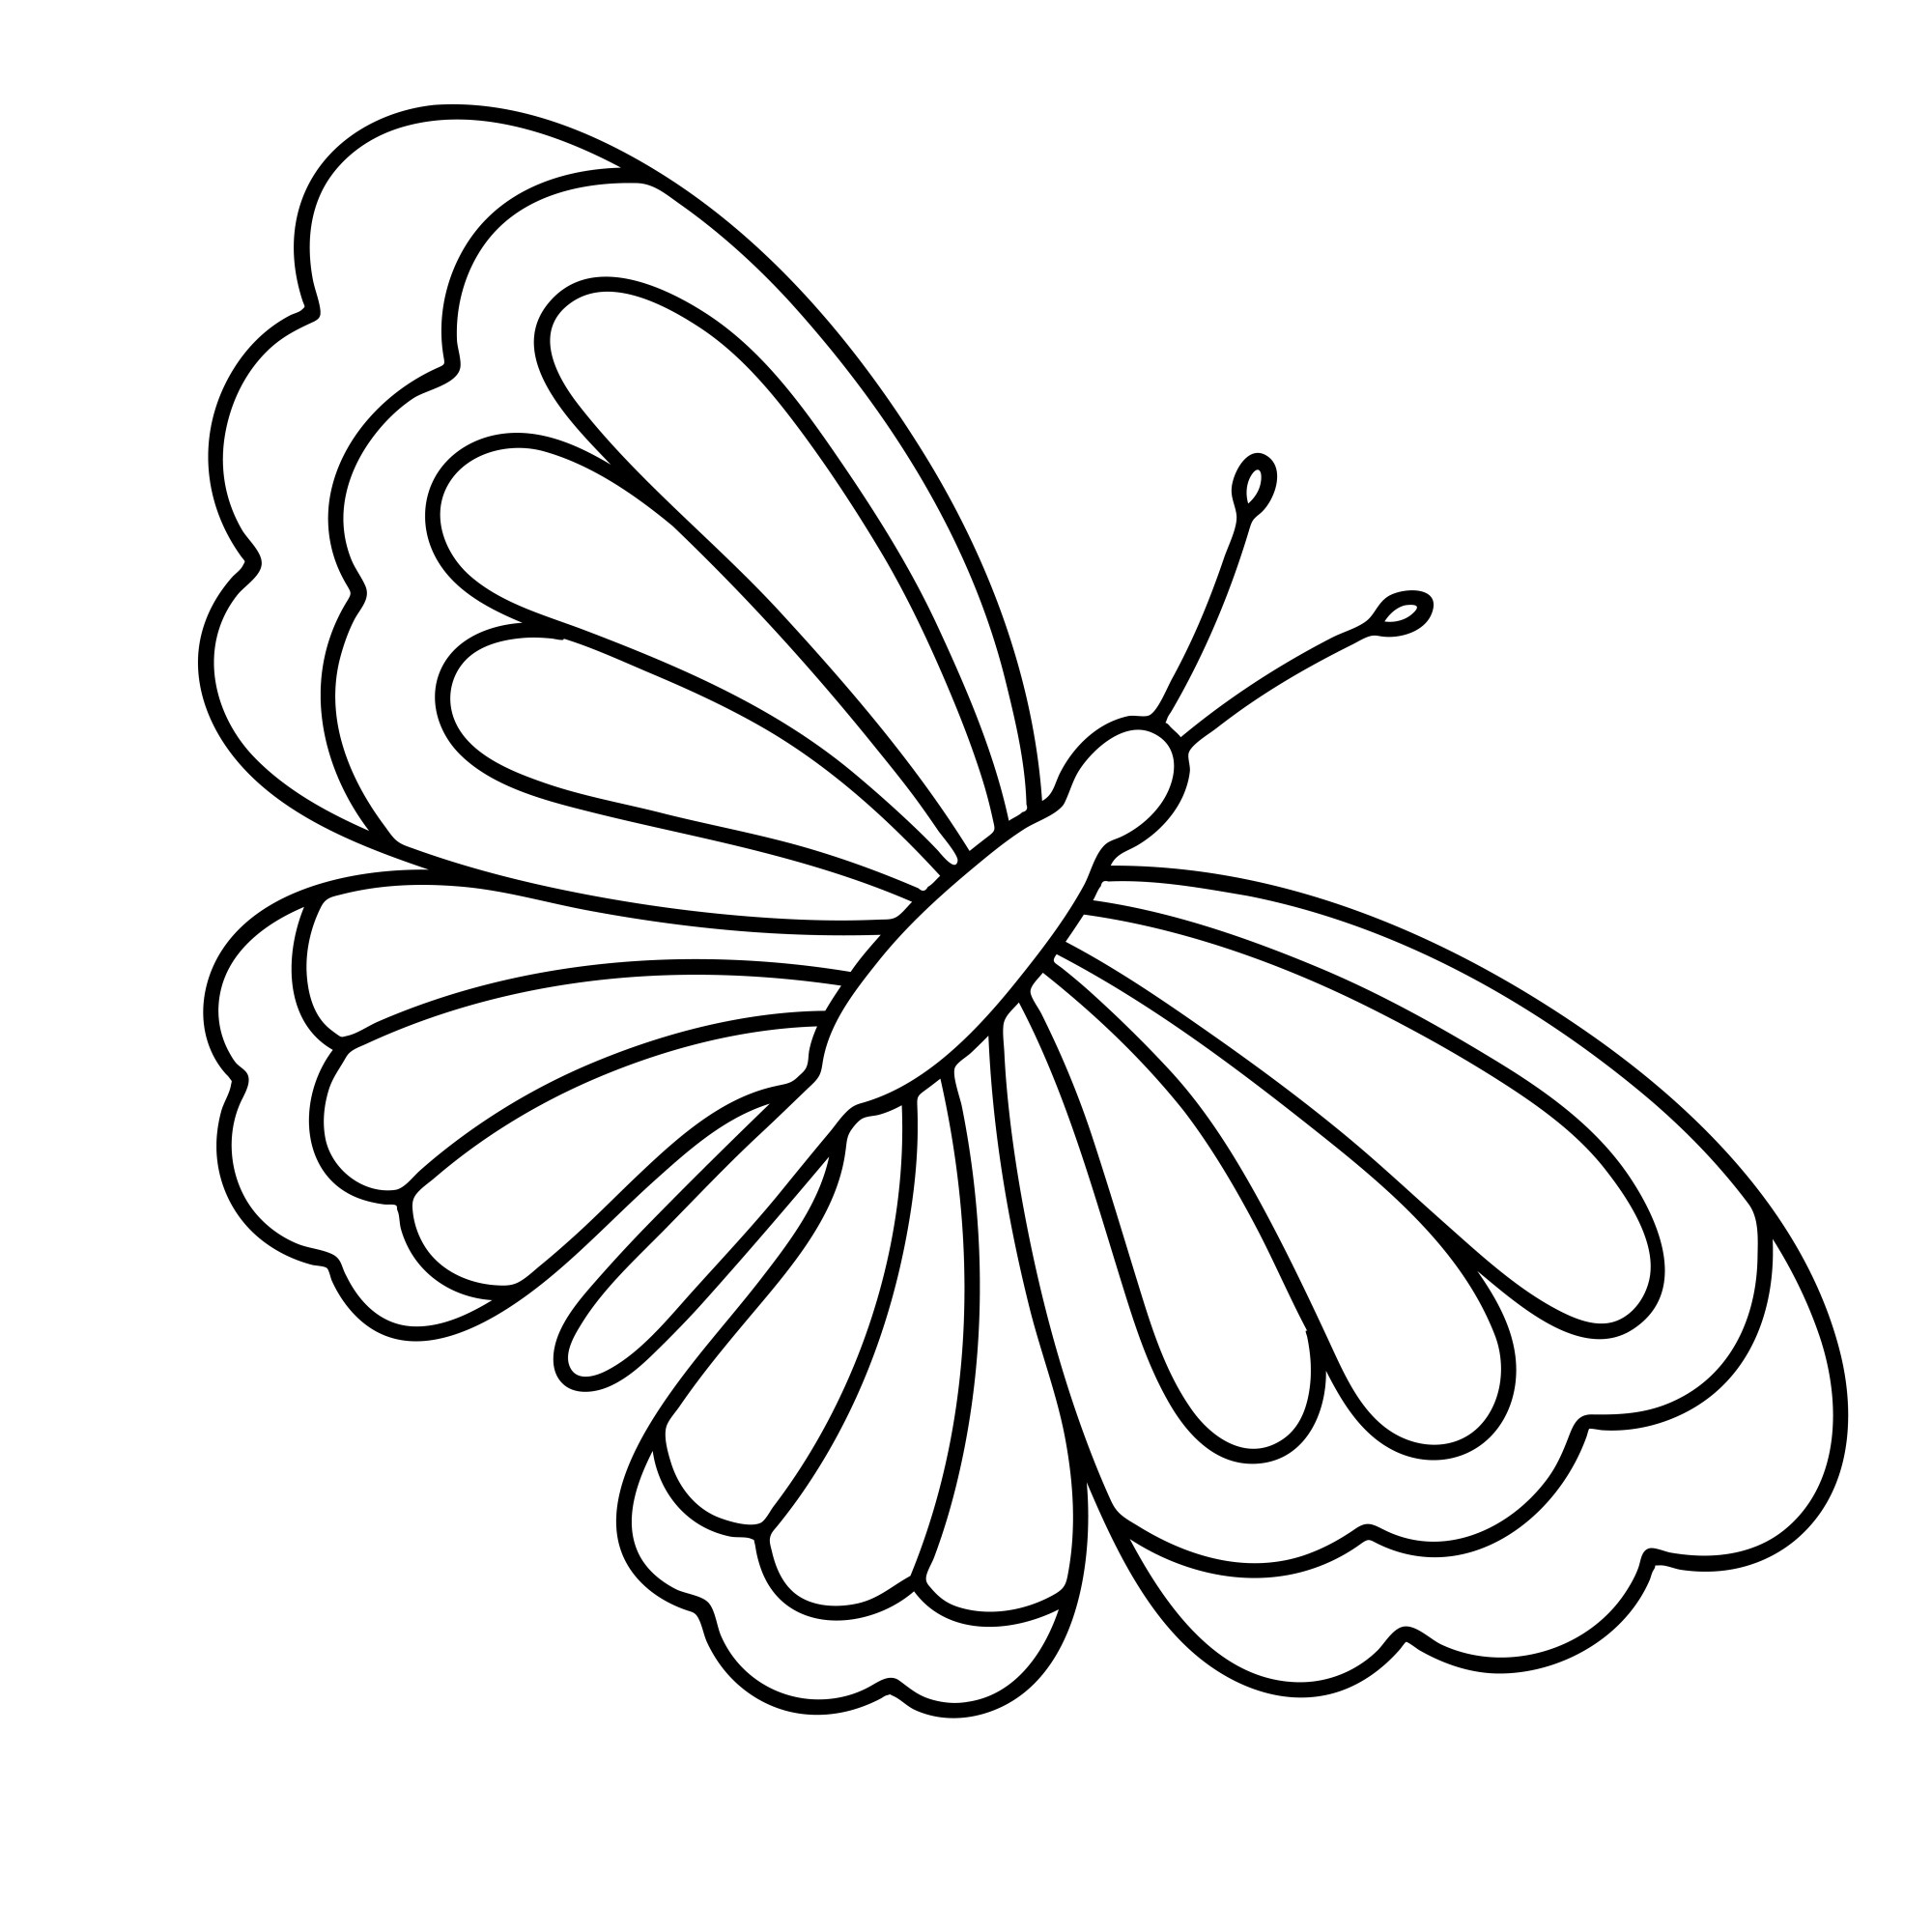 Раскраска для детей: радужная бабочка